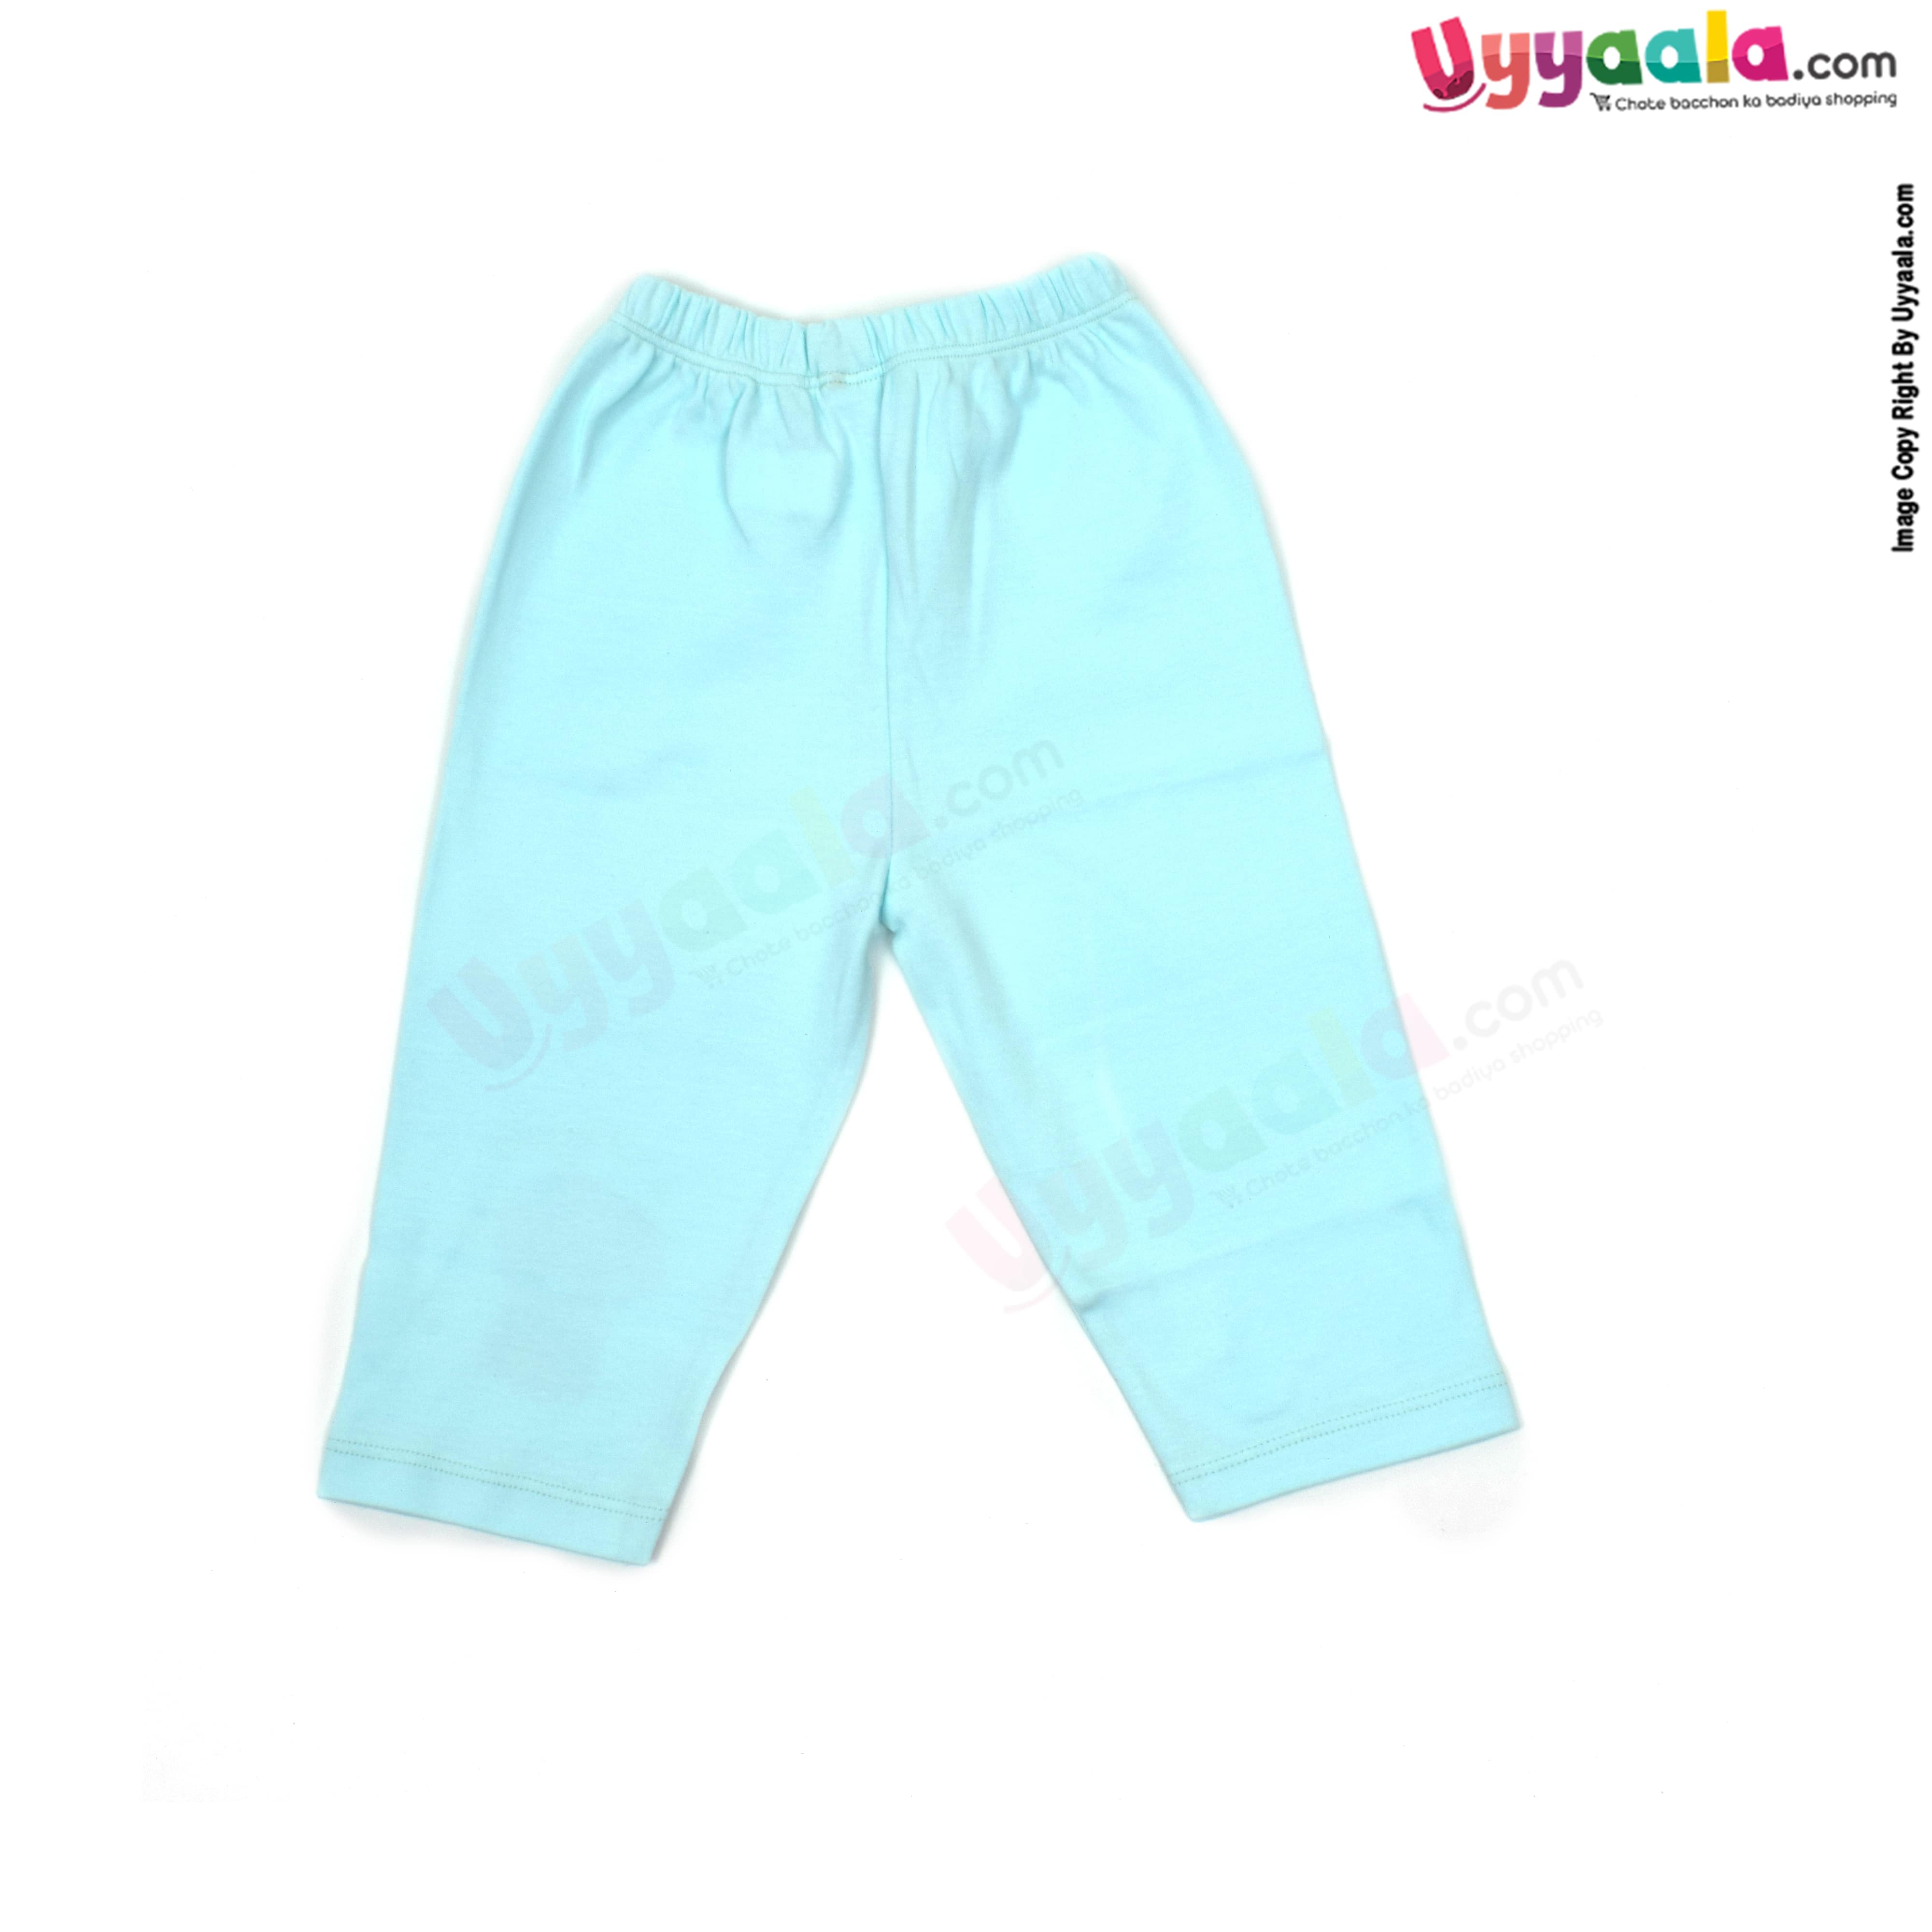 Buy Teal Blue Track Pants for Men by The Indian Garage Co Online  Ajiocom